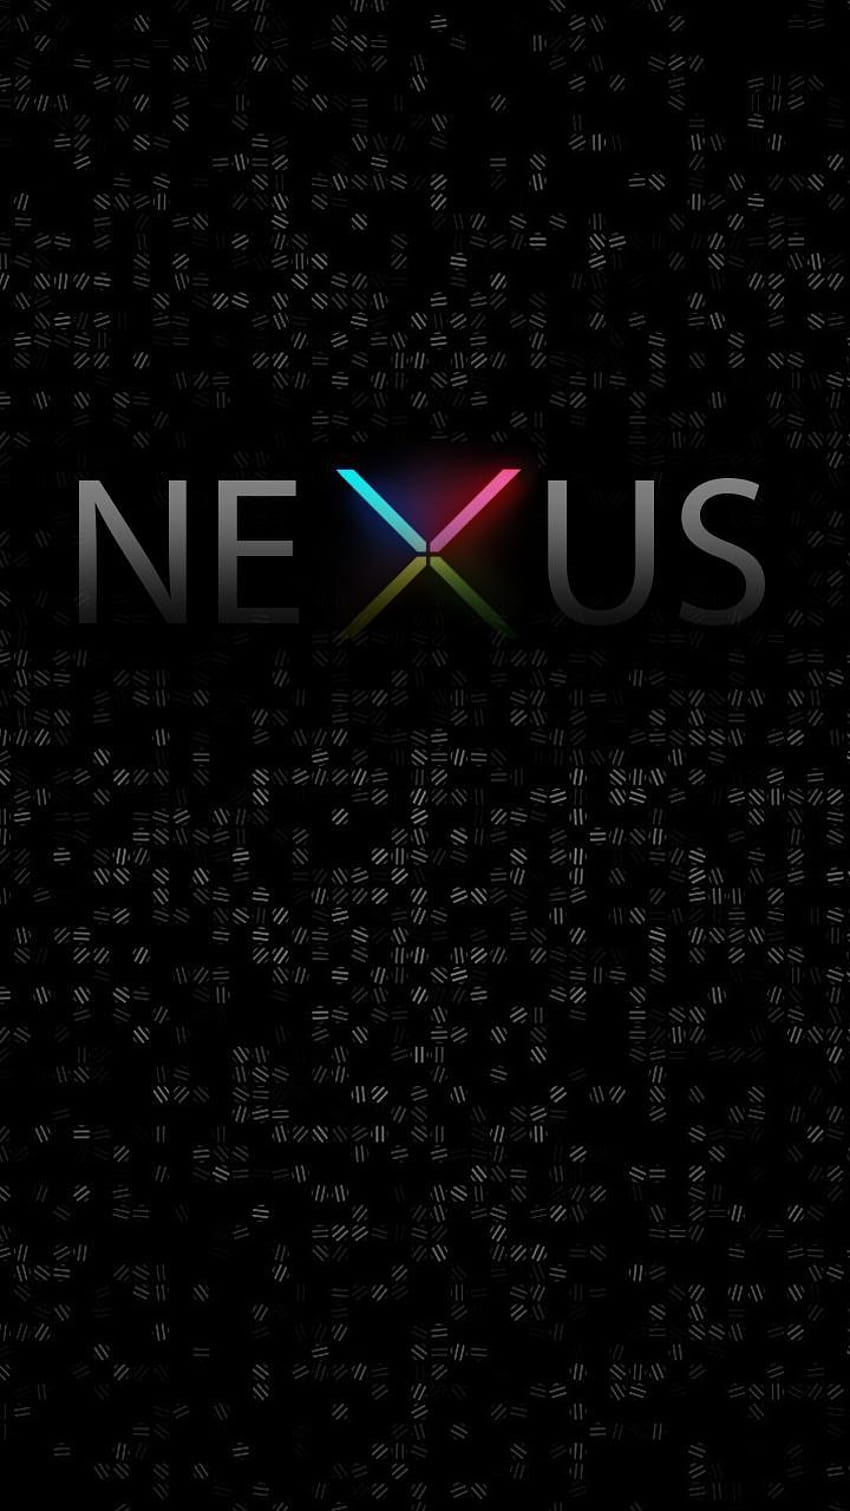 nexus 4 default wallpaper